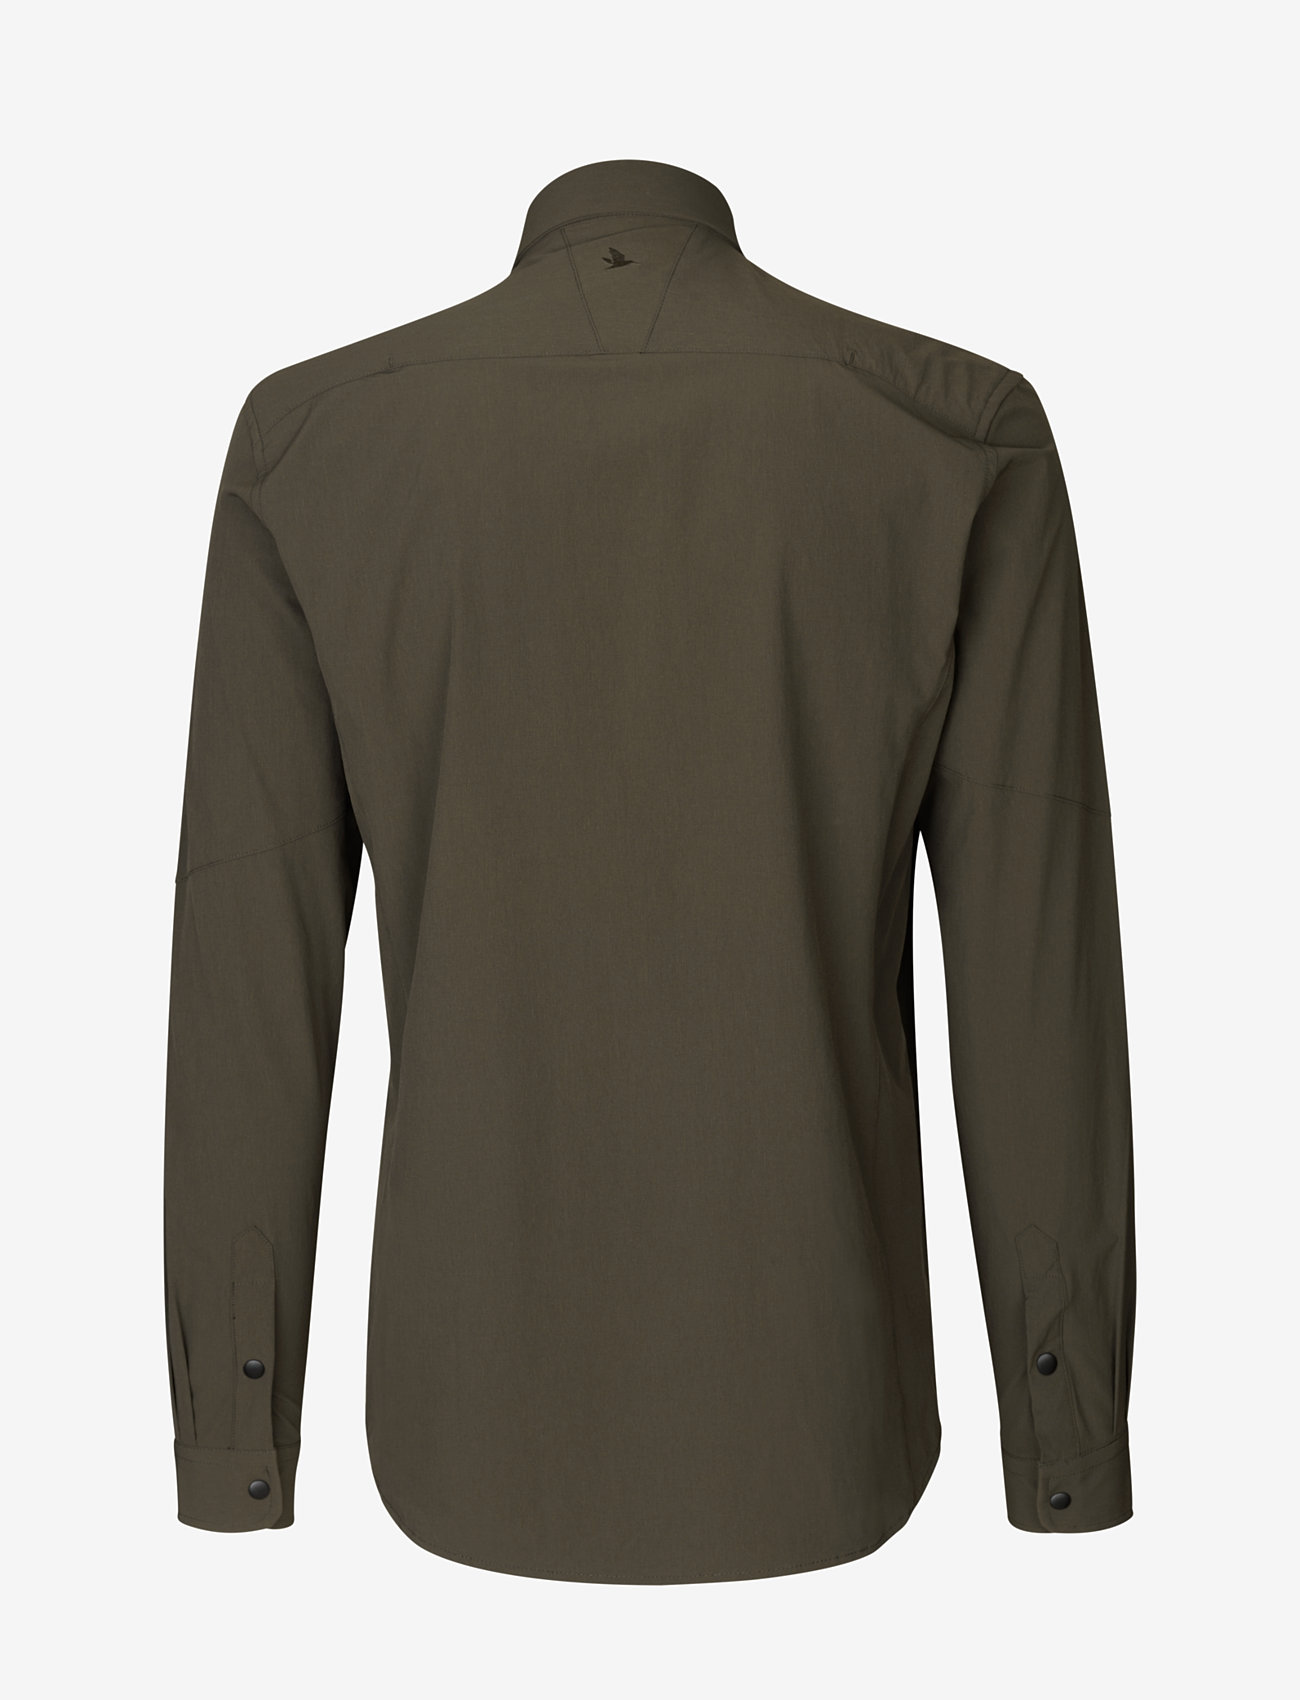 Seeland - Hawker shirt - casual hemden - pine green - 1